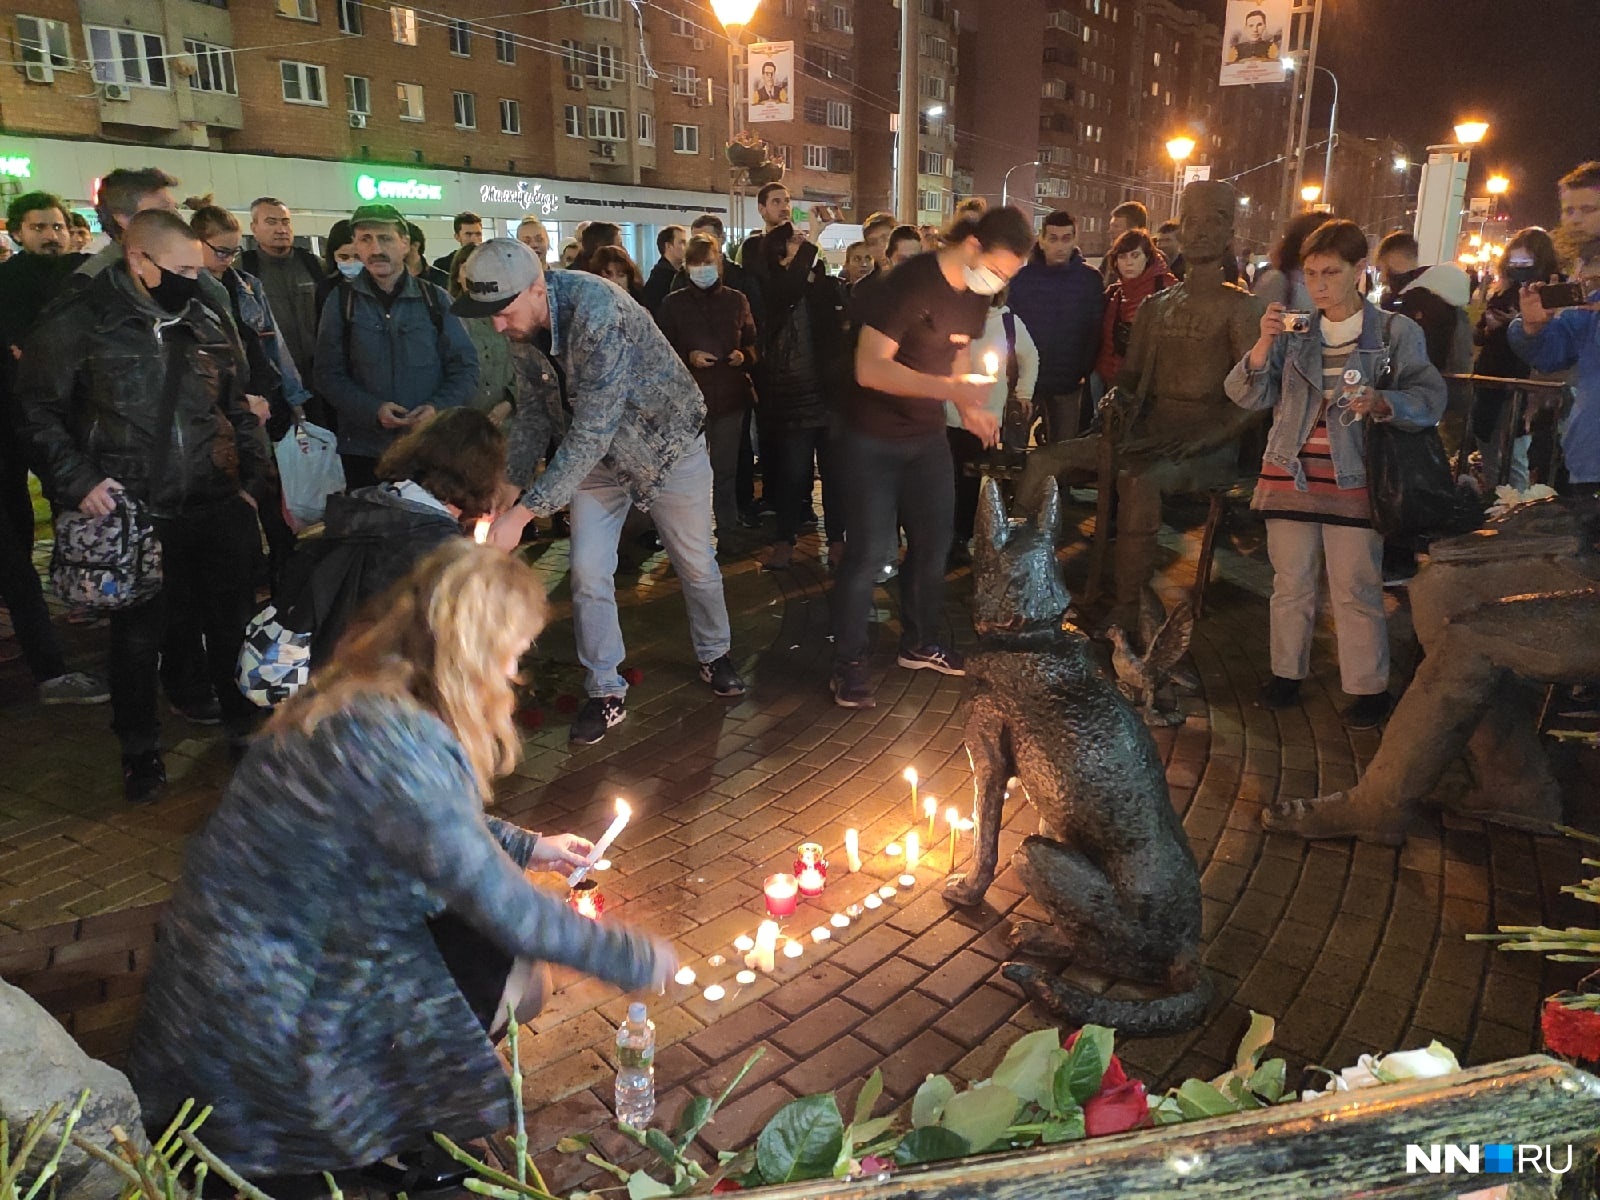 Нижегородцы приносят свечи и цветы, общаются и пытаются понять, что стало причиной этого непоправимого решения 